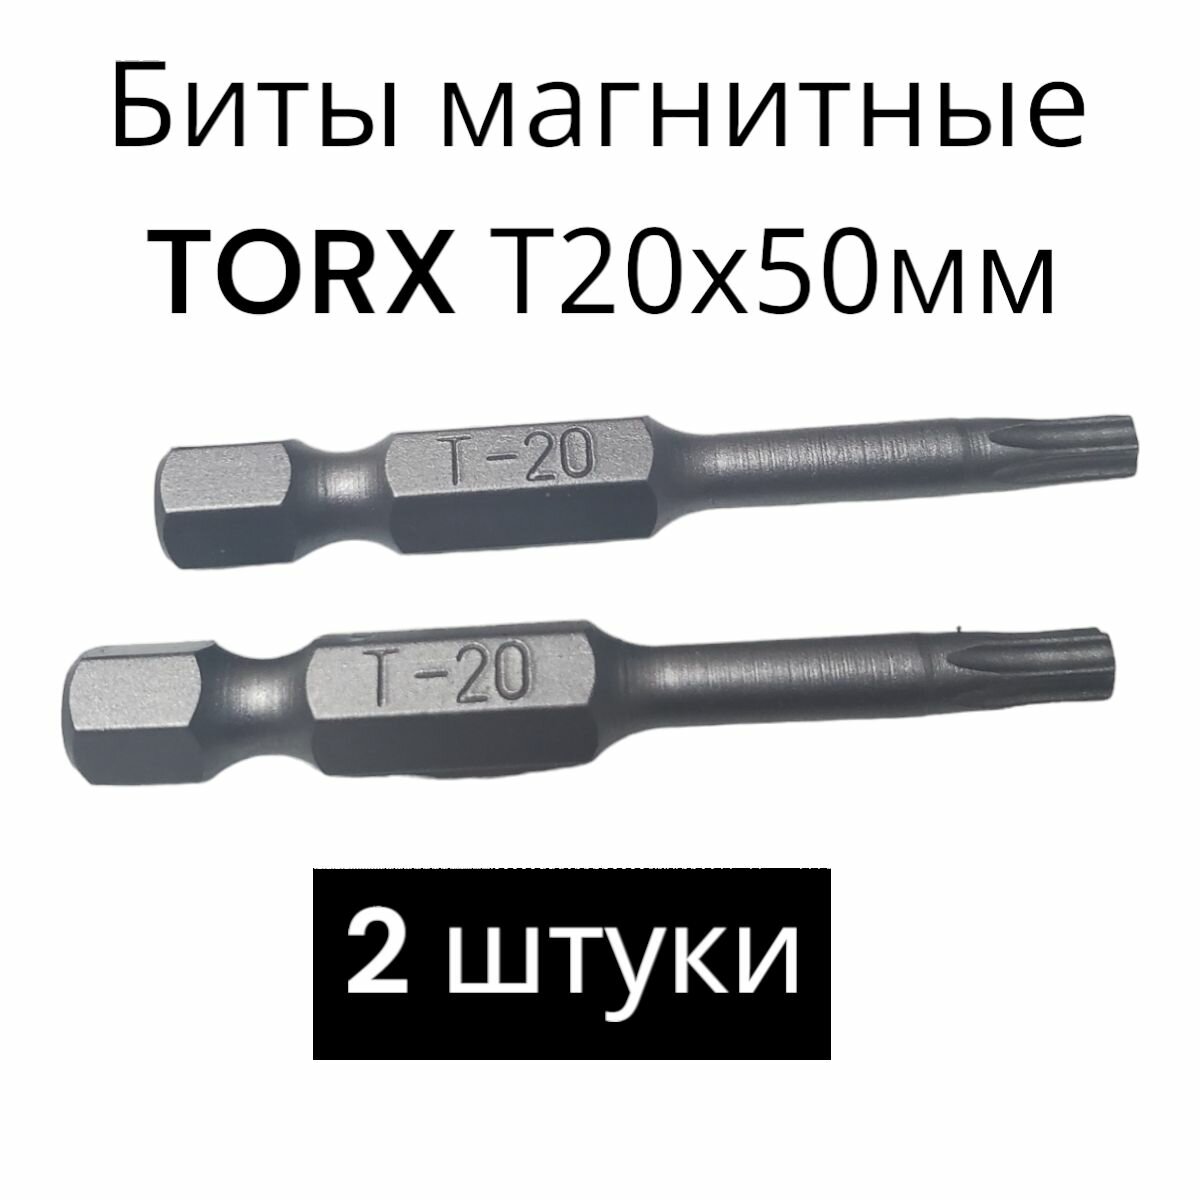 Биты магнитные TORX T20х50мм 2 штуки / биты для шуруповертов 50 мм